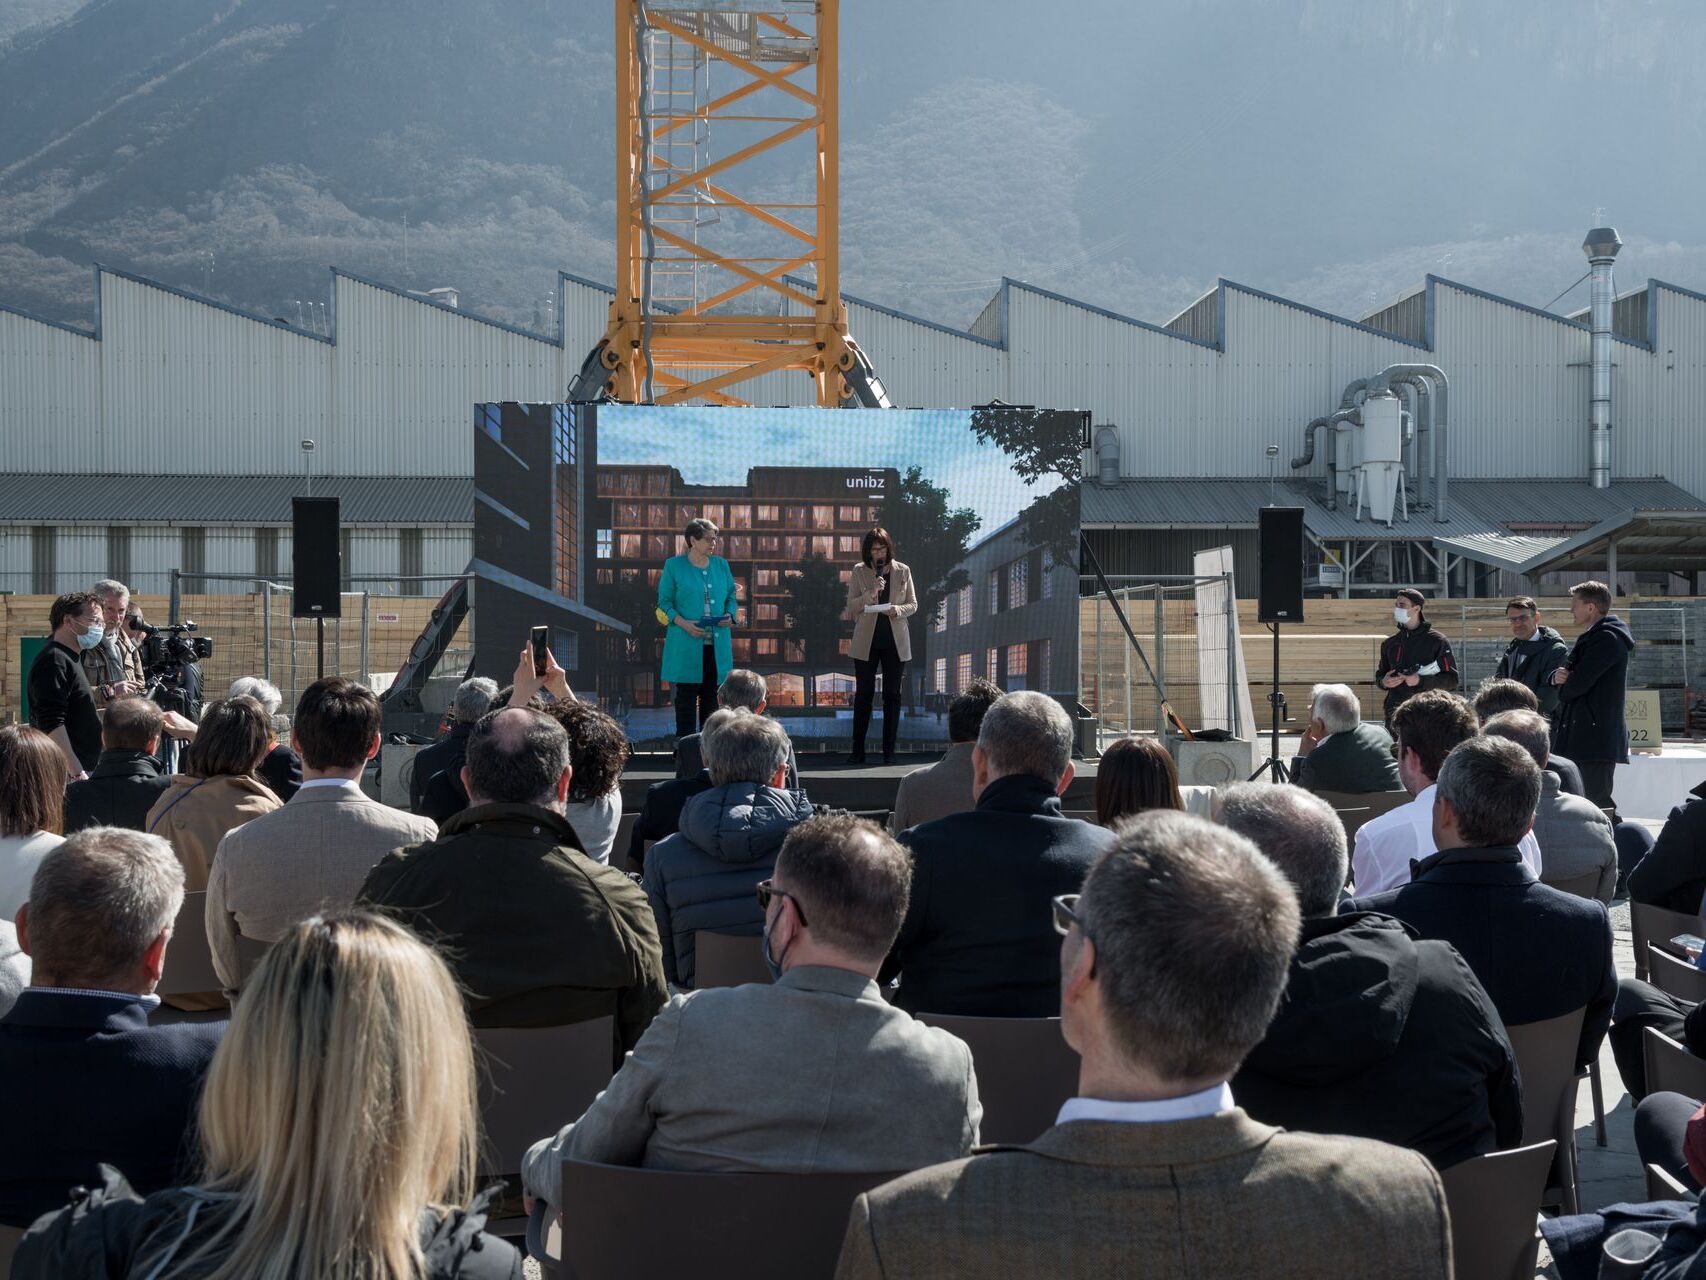 Më 23 mars në NOI Techpark u festua "vënia e gurit të themelit" të Fakultetit të Inxhinierisë së ardhshme të Universitetit të Lirë Bozen-Bolzano, me të cilin distrikti i inovacionit të Tirolit Jugor/Südtirol po përgatitet të hyjë në një dimension të ri: Ulrike Tappeiner, presidente e universitetit, dhe presidente e Universitetit të Teknologjisë së lirë Helga "Thallë". zen, me të cilin distrikti i inovacionit të Tirolit Jugor/Südtirol po përgatitet të hyjë në një dimension të ri